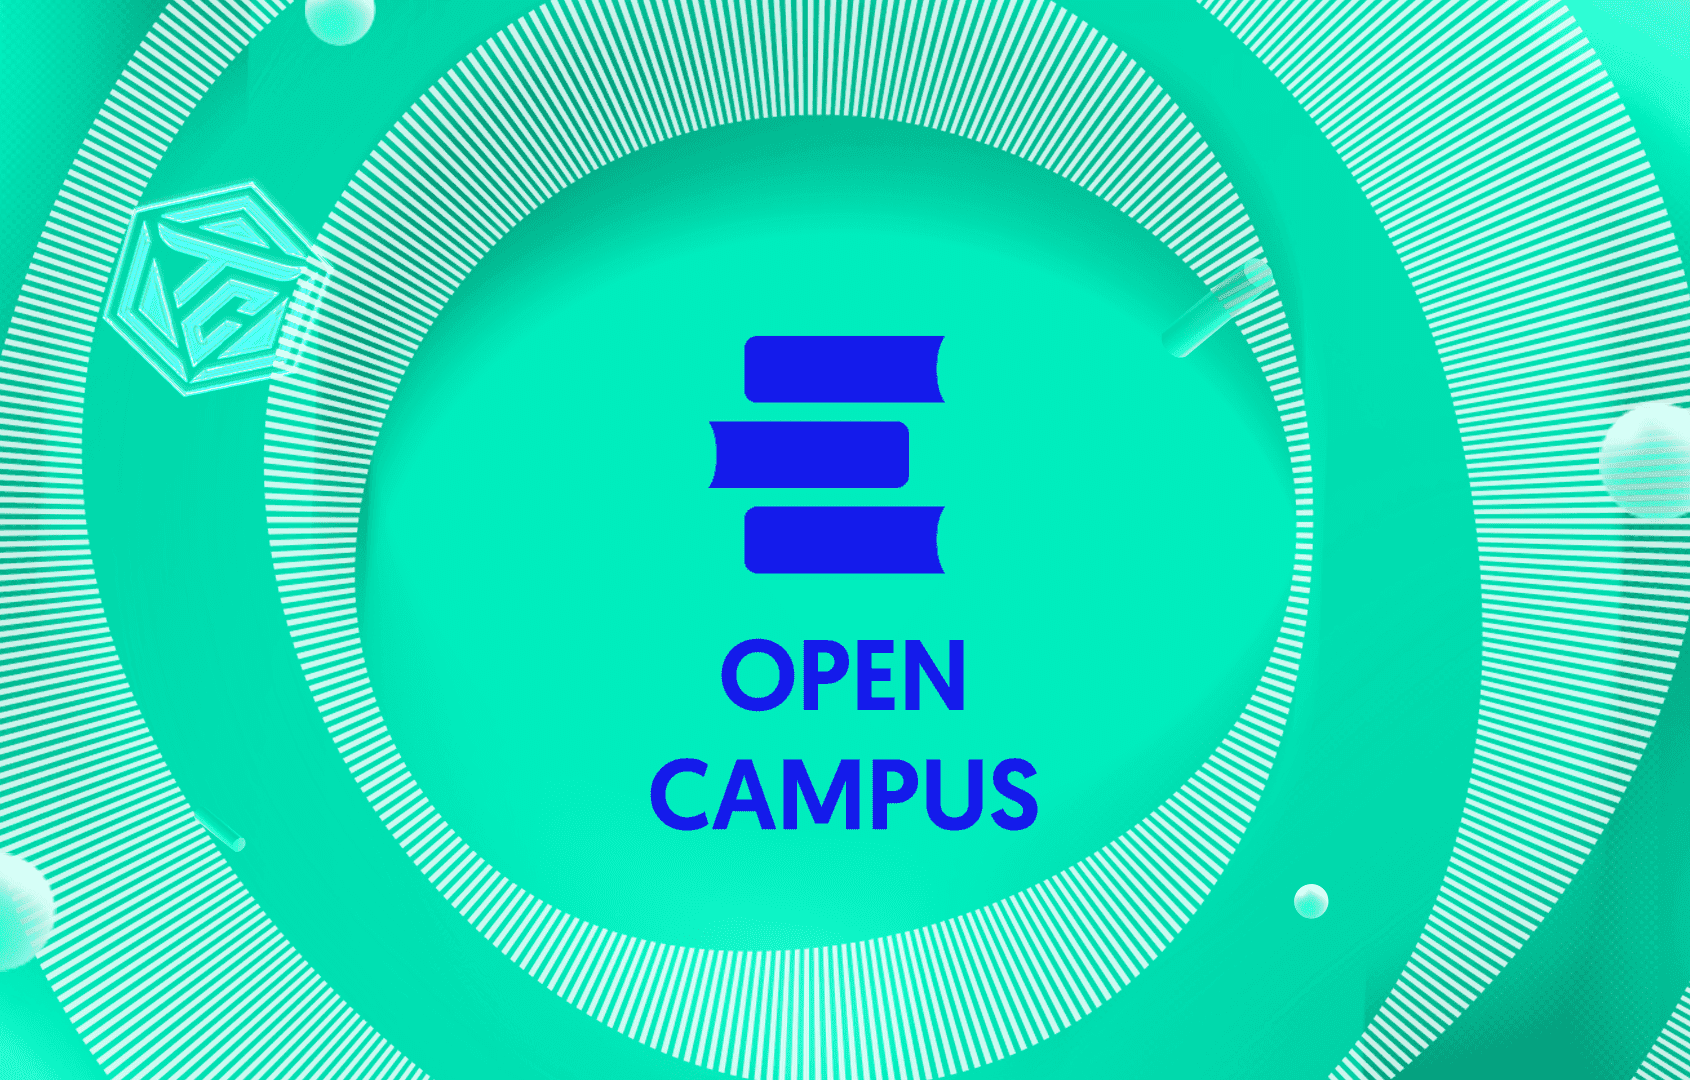 Open Campus là gì? Dự án làm về giáo dục được lên Binance Launchpad